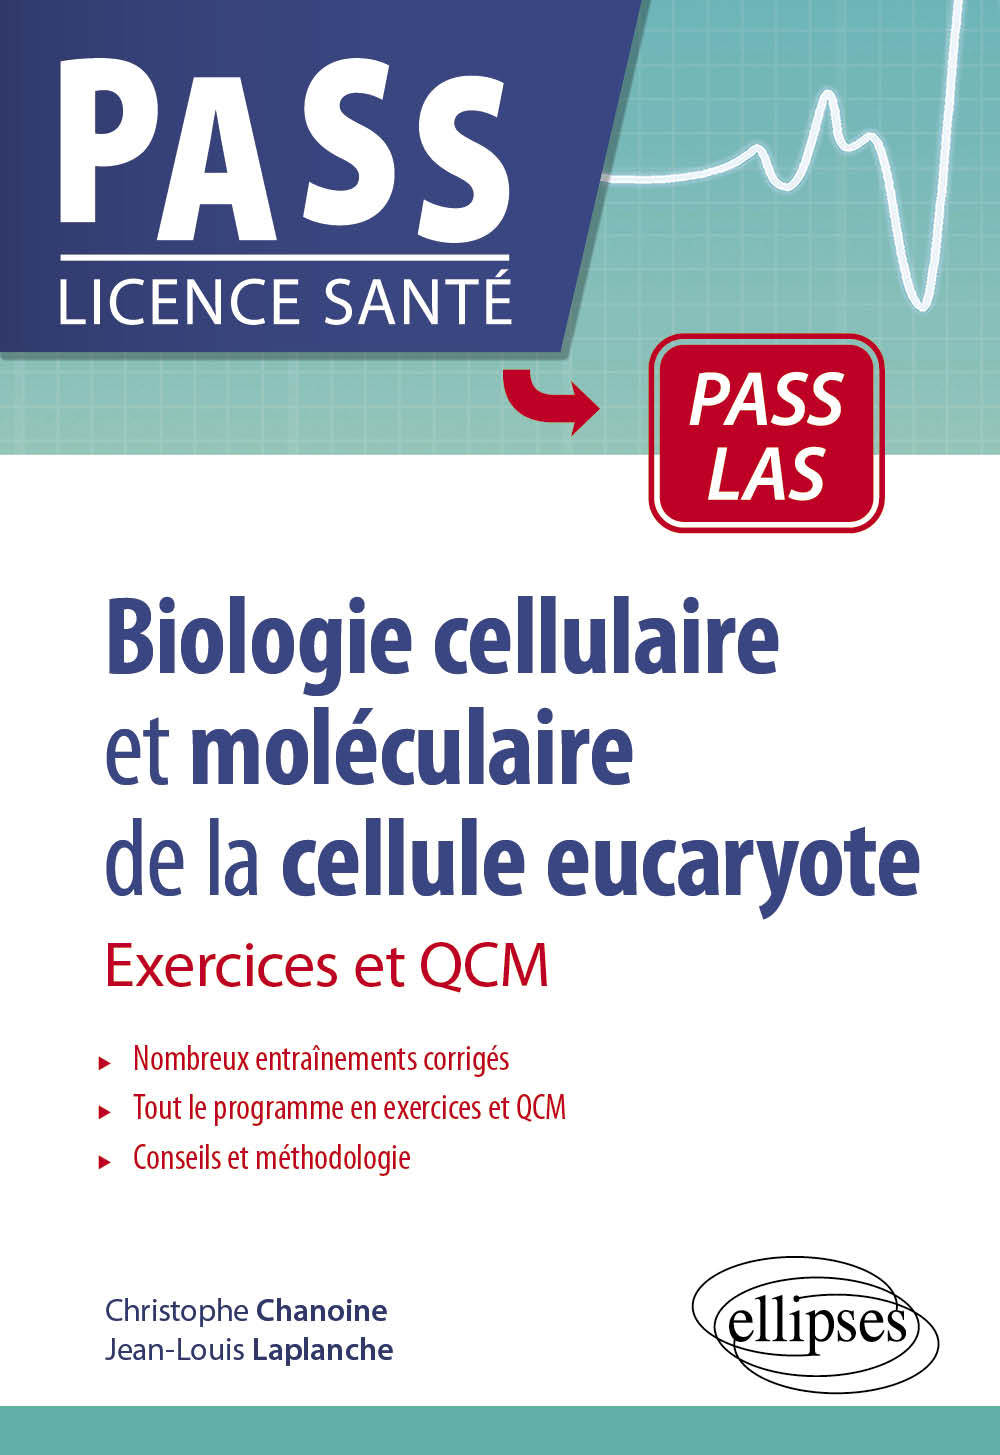 Biologie cellulaire et moléculaire de la cellule eucaryote - Exercices et QCM (9782340061866-front-cover)